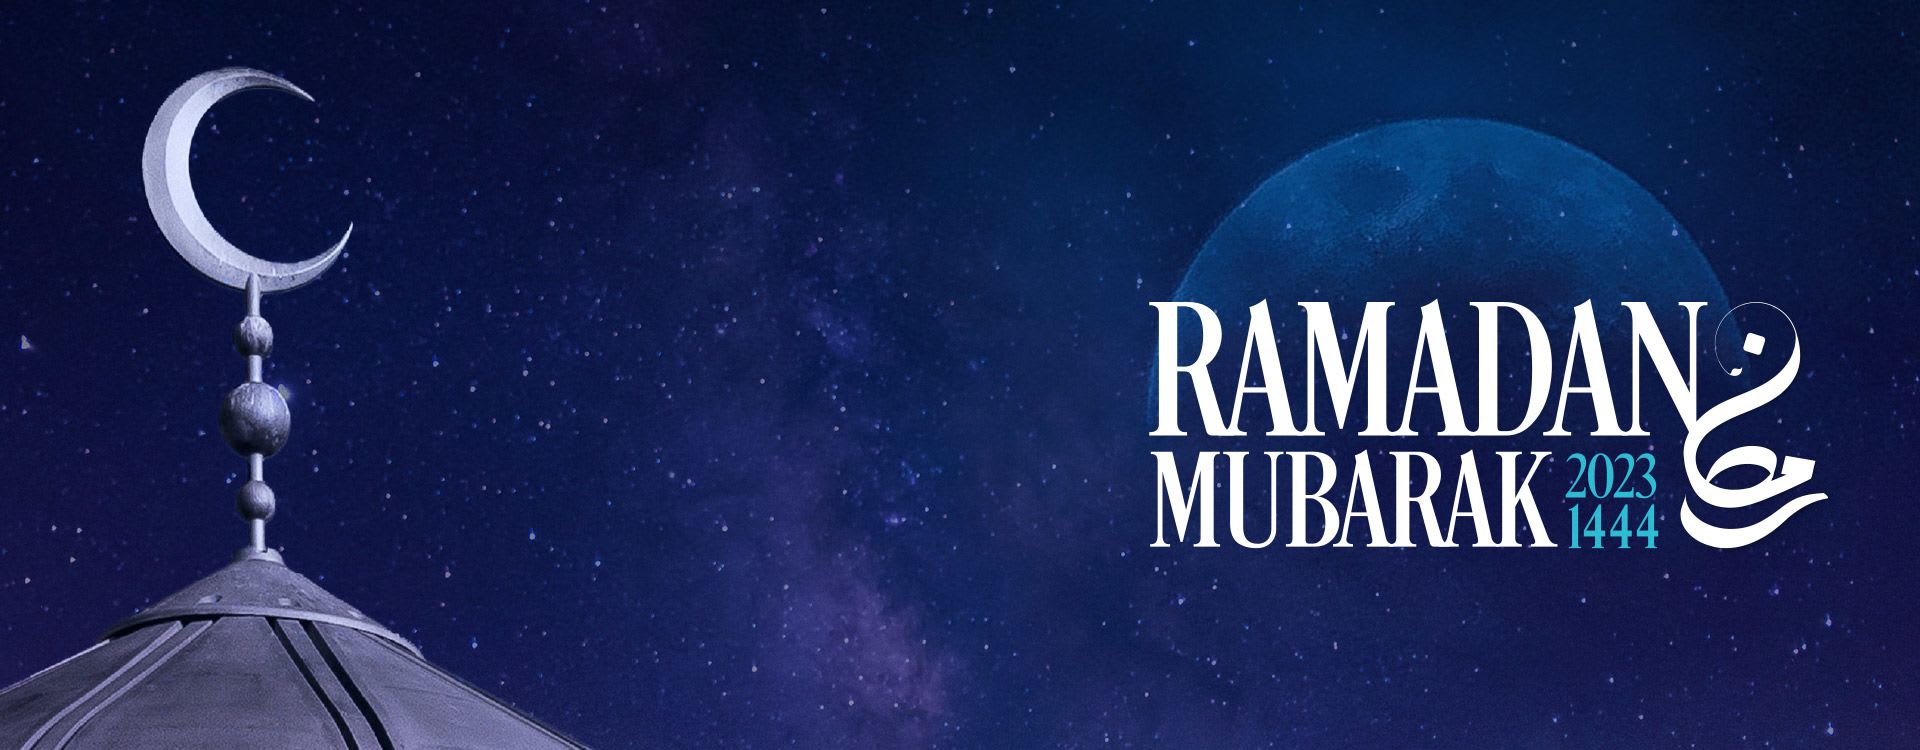 Start of Ramadan 2023